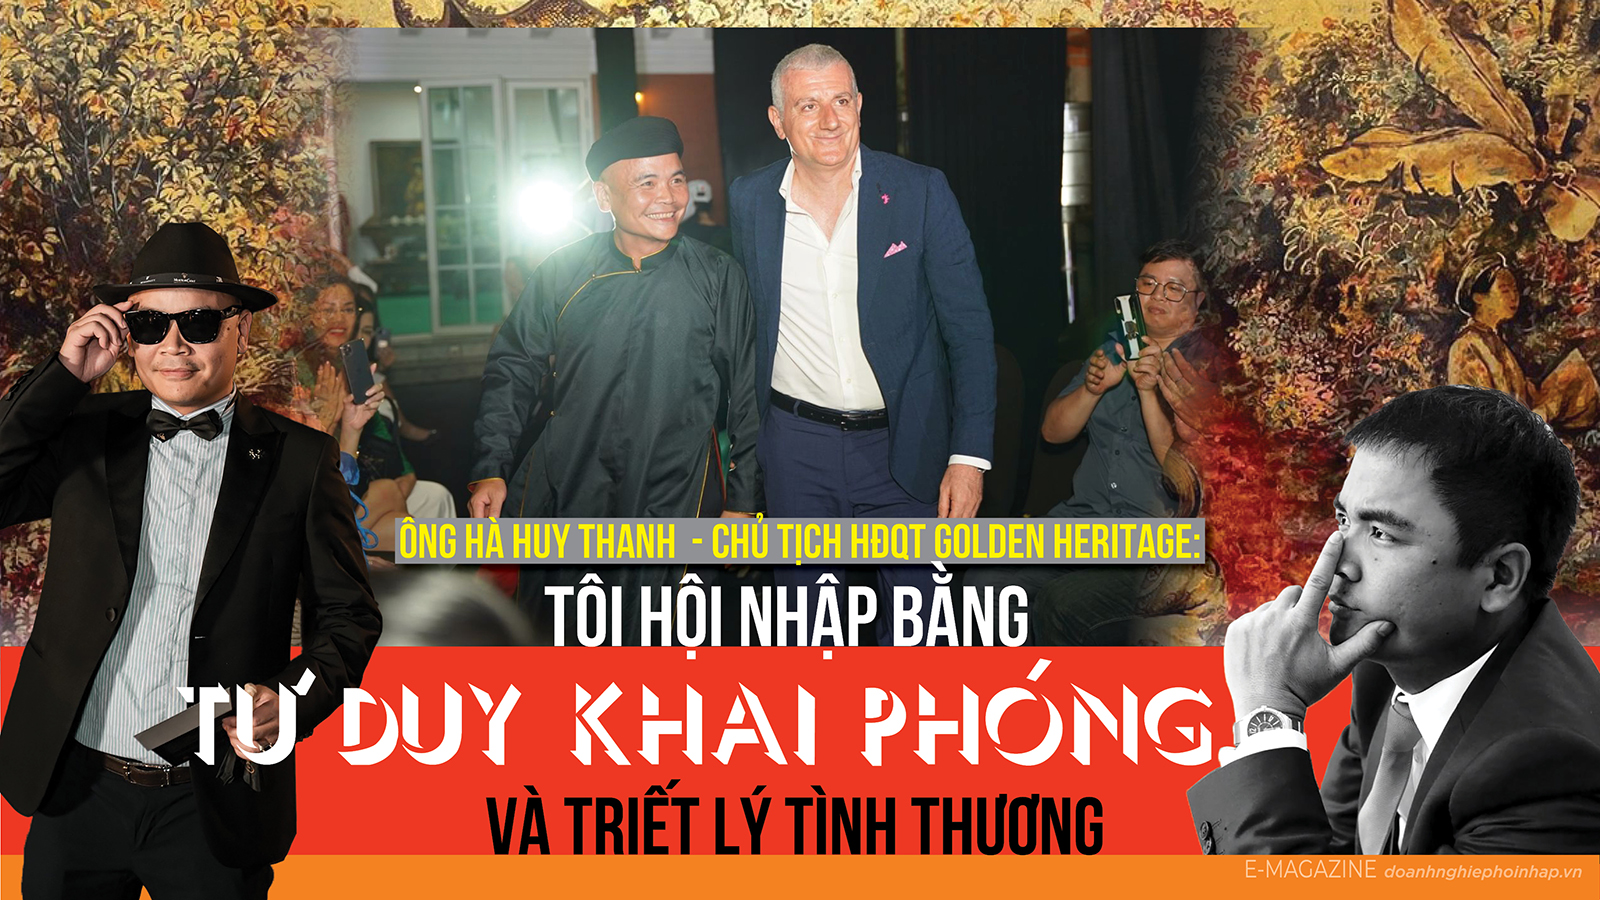 Ông Hà Huy Thanh - Chủ tịch HĐQT Golden Heritage: Tôi hội nhập bằng tư duy khai phóng và triết lý tình thương